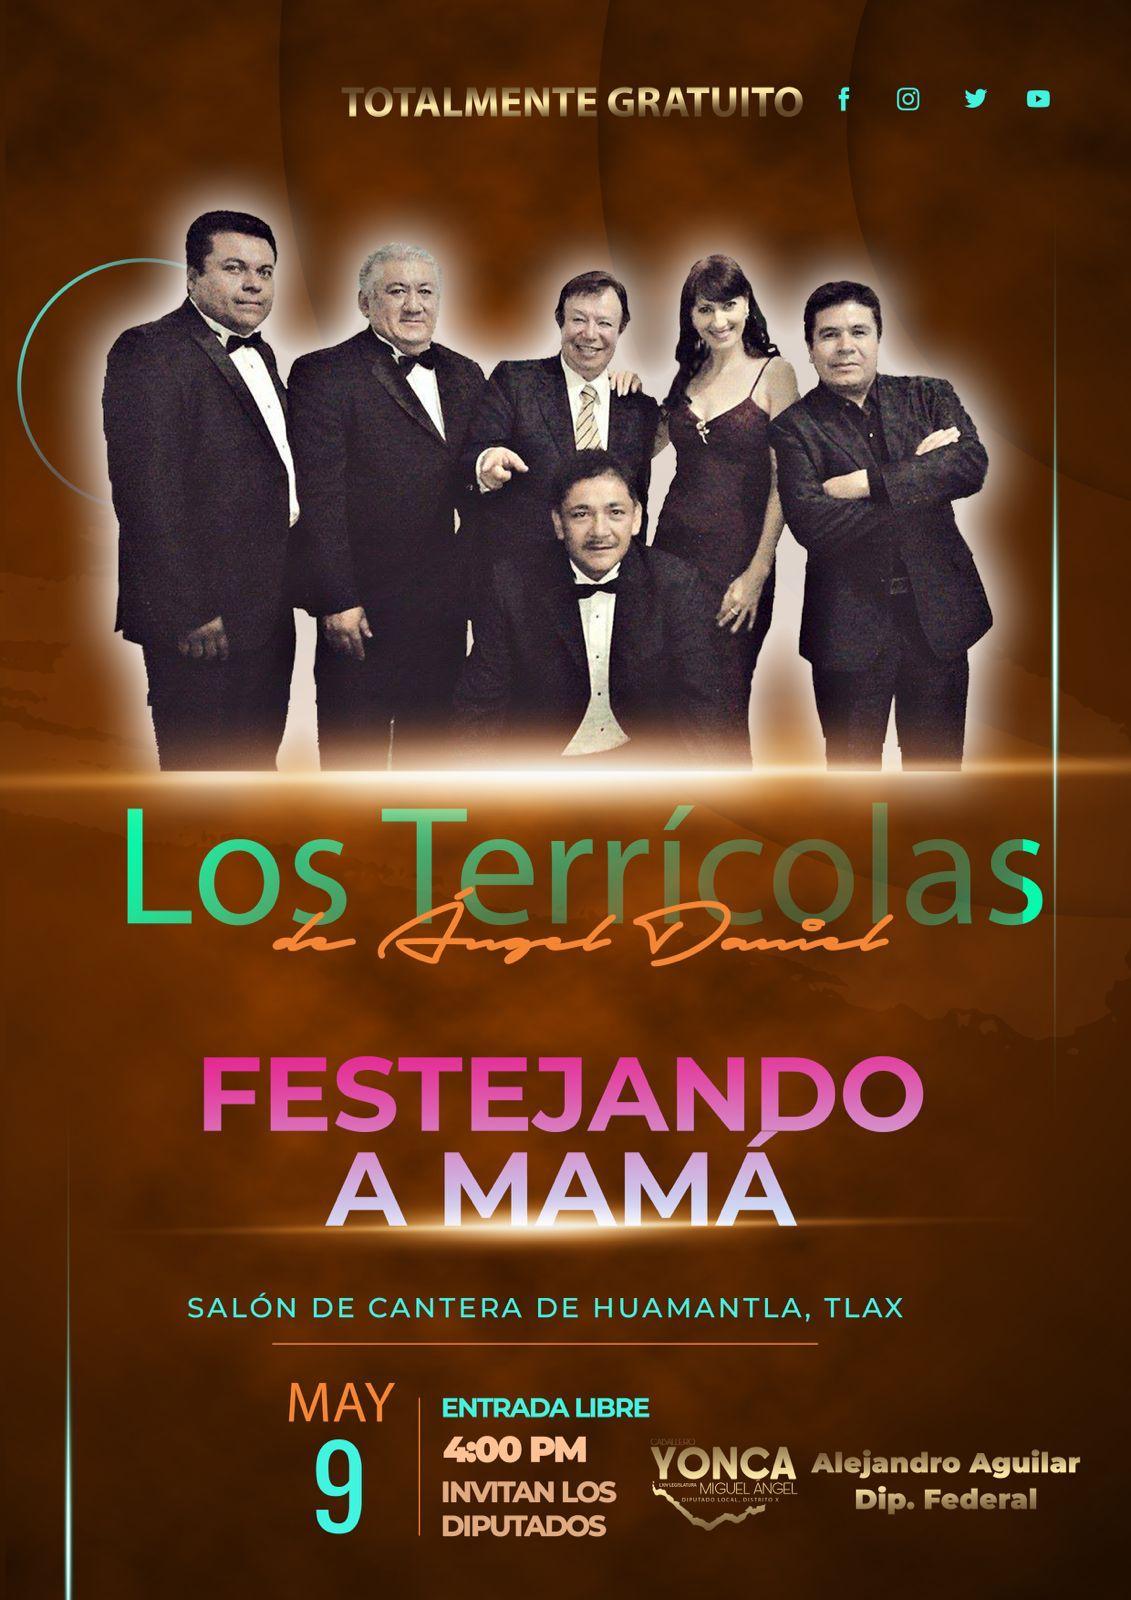 Yonca y Aguilar, celebrarán a mamá con un concierto GRATUITO de Los Terrícolas